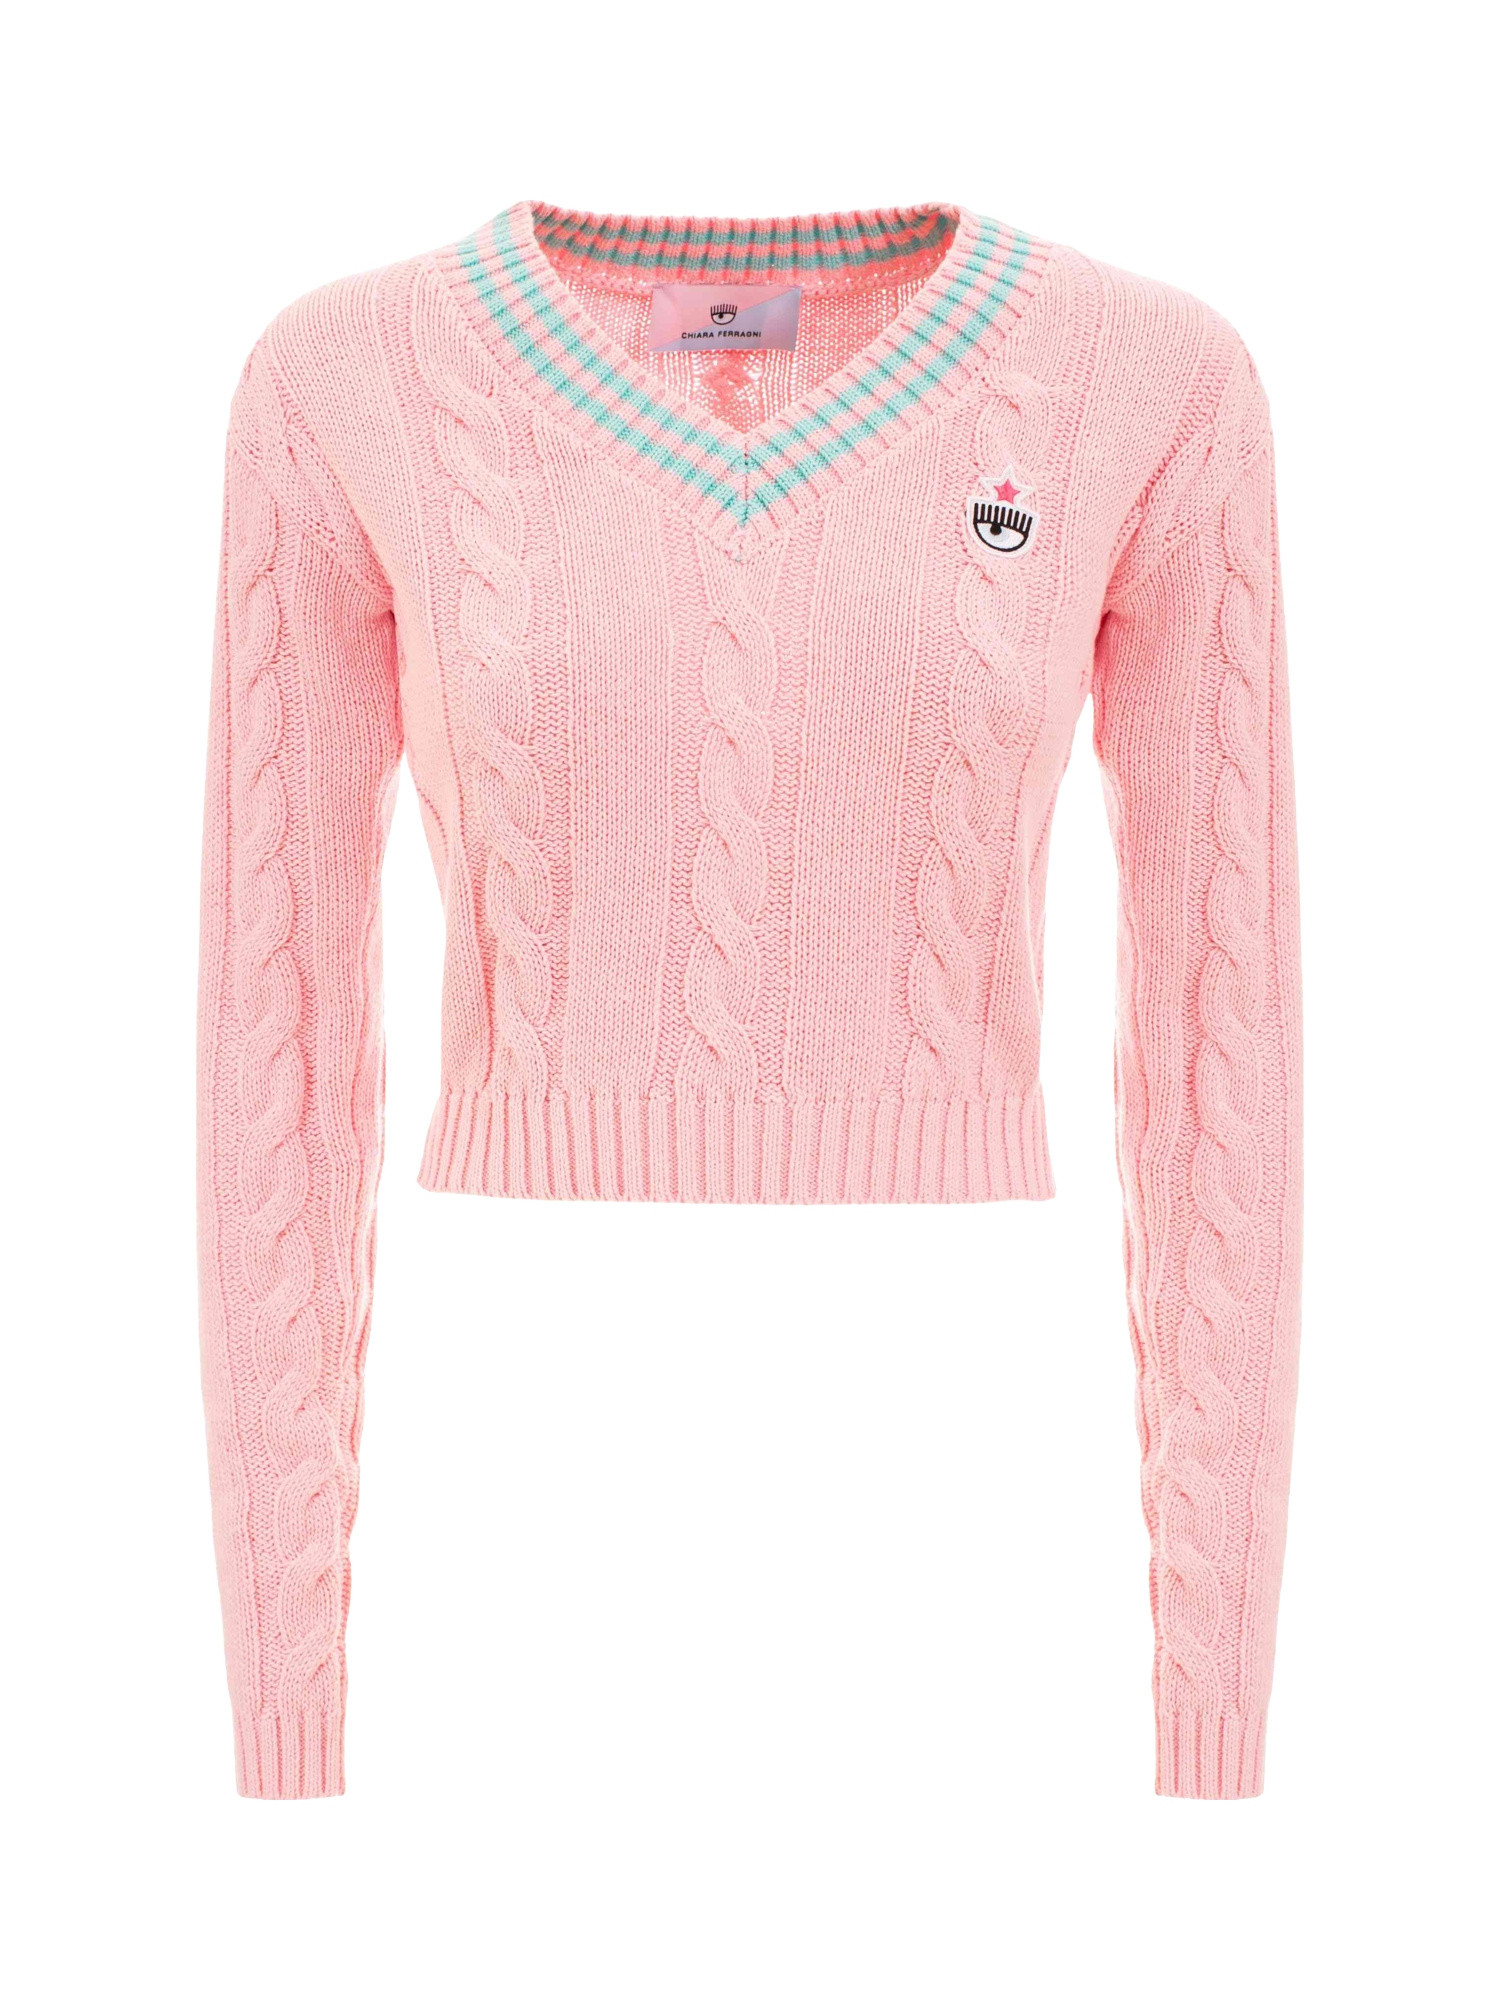 Chiara Ferragni - Cropped V-neck sweater, Pink, large image number 0